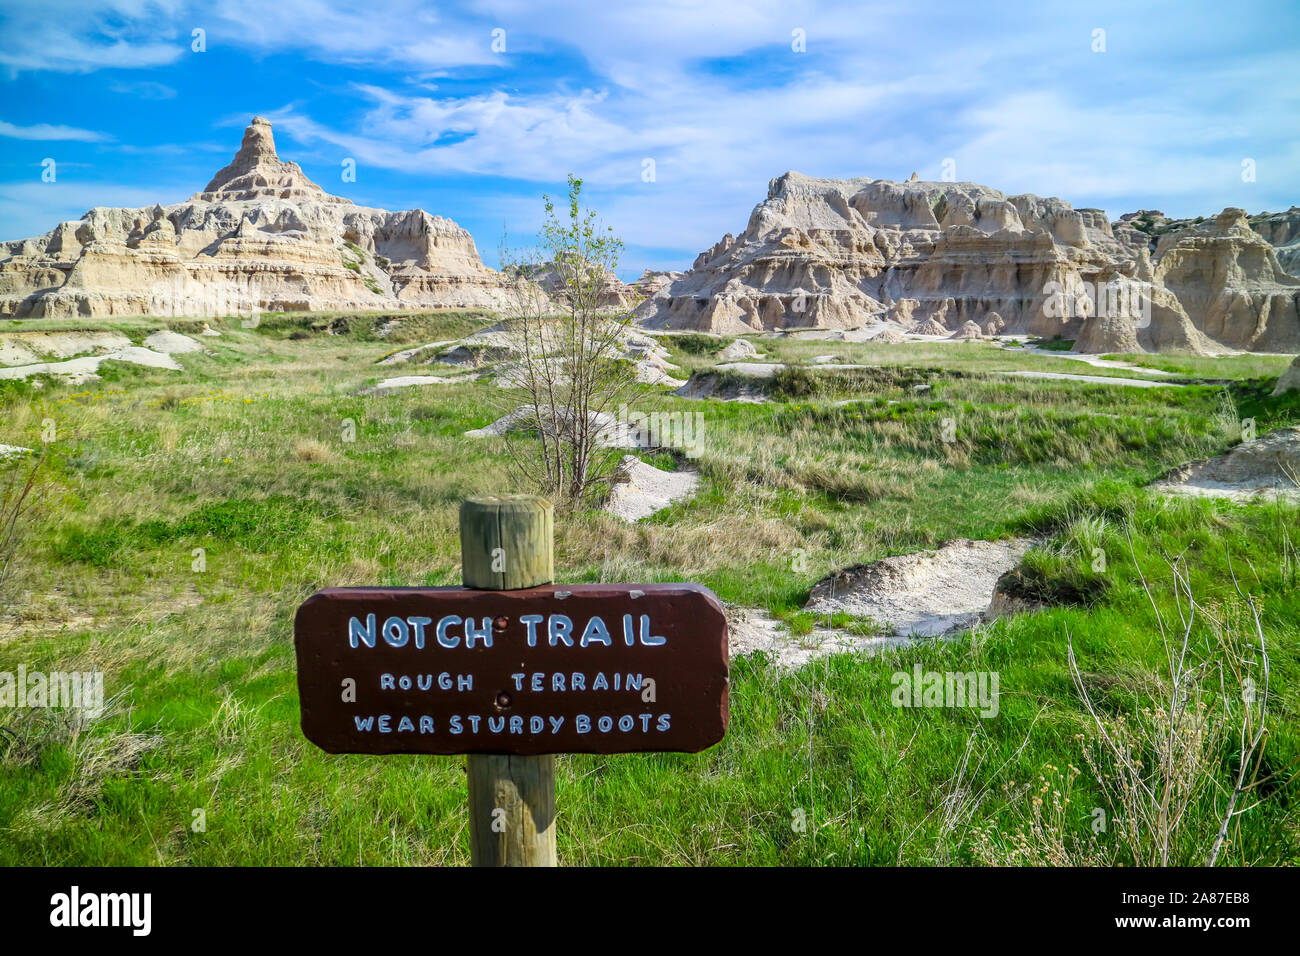 Parco nazionale Badlands, SD, Stati Uniti d'America - 15 Maggio 2019: una direzione alla tacca sentiero escursionistico Foto Stock